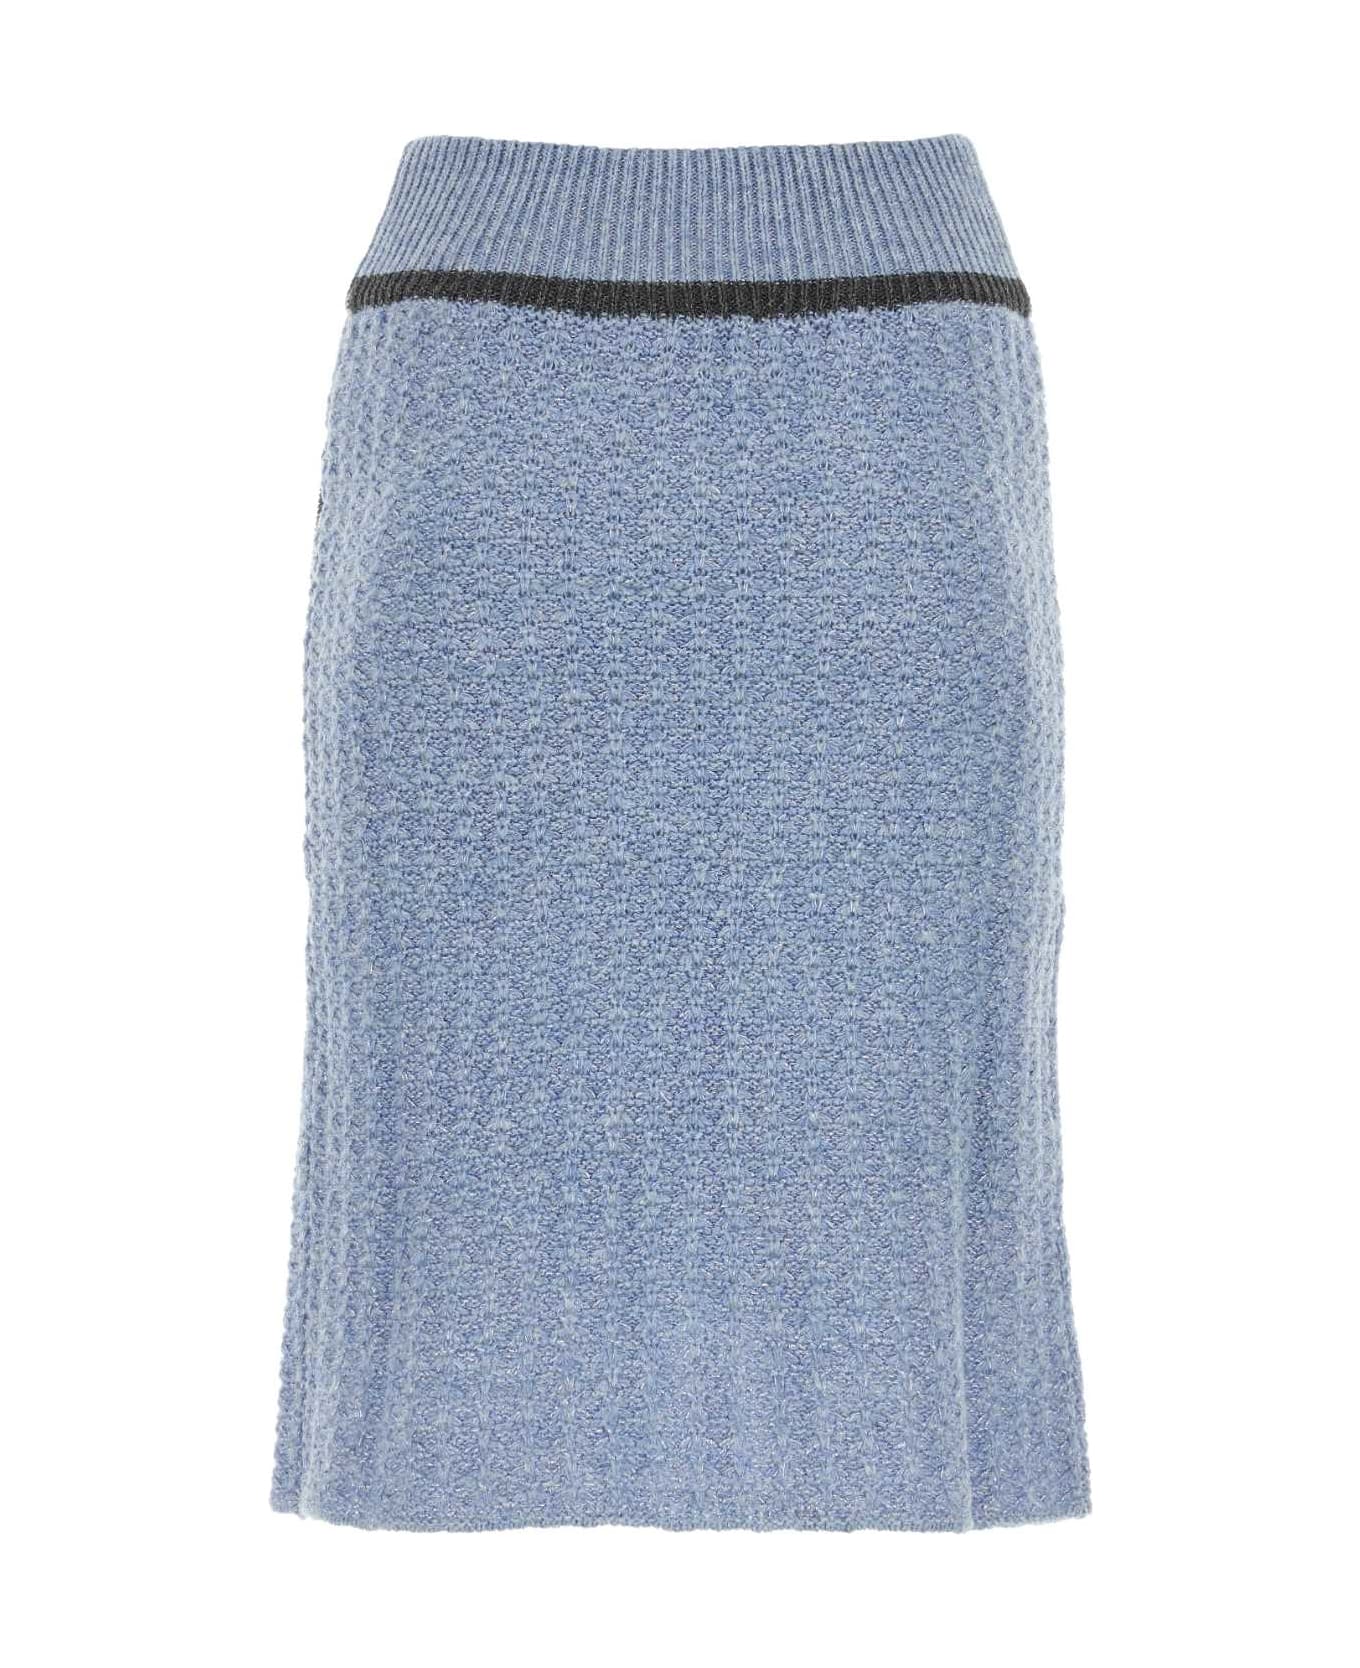 Cormio Cerulean Wool Blend Skirt - BLUEPERVINCA スカート